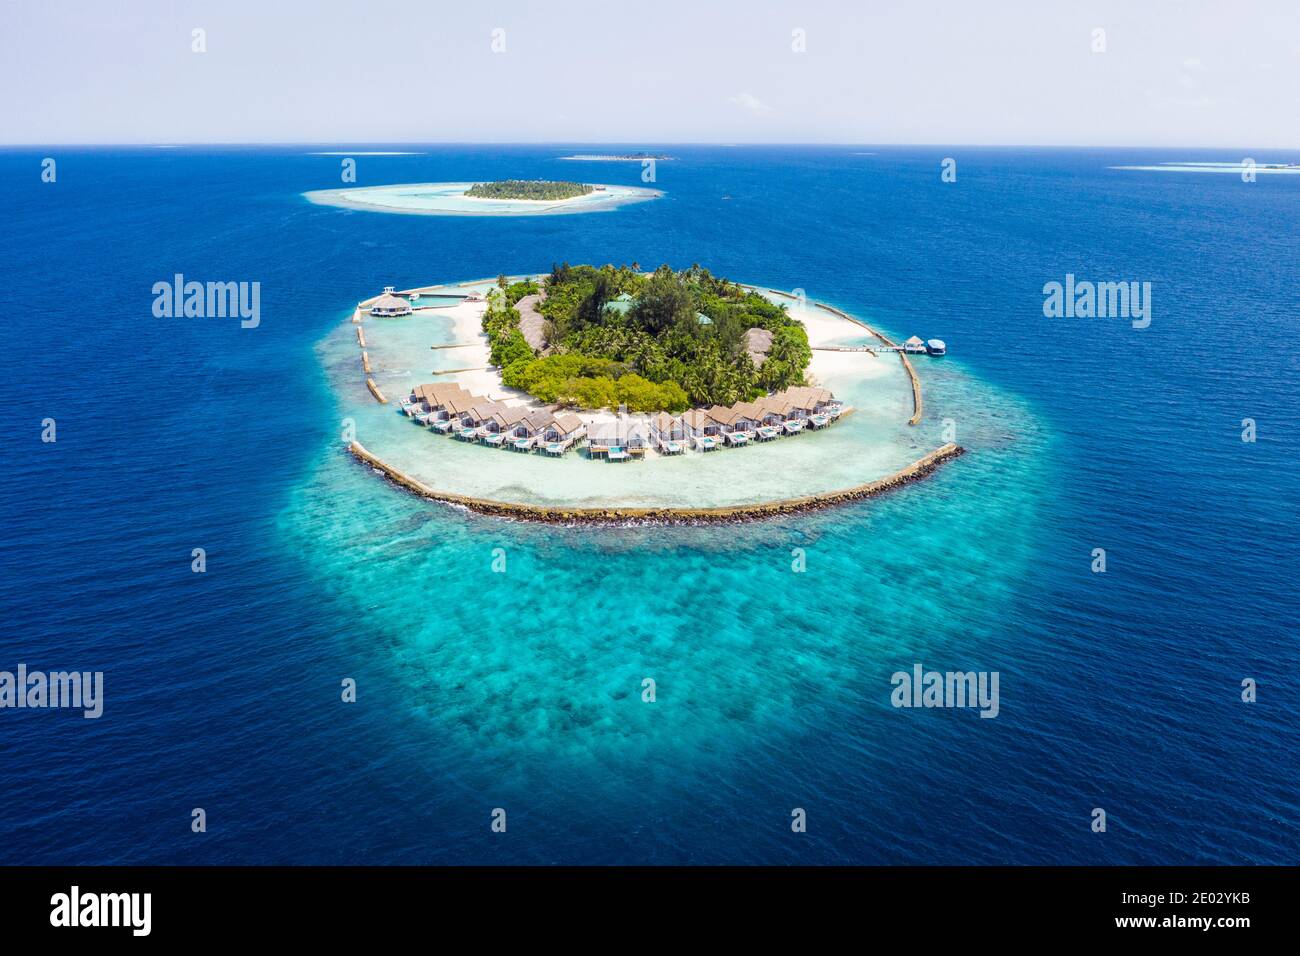 Vacation Island Kuda Rah, Ari Atoll, Indian Ocean, Maldives - Stock Image